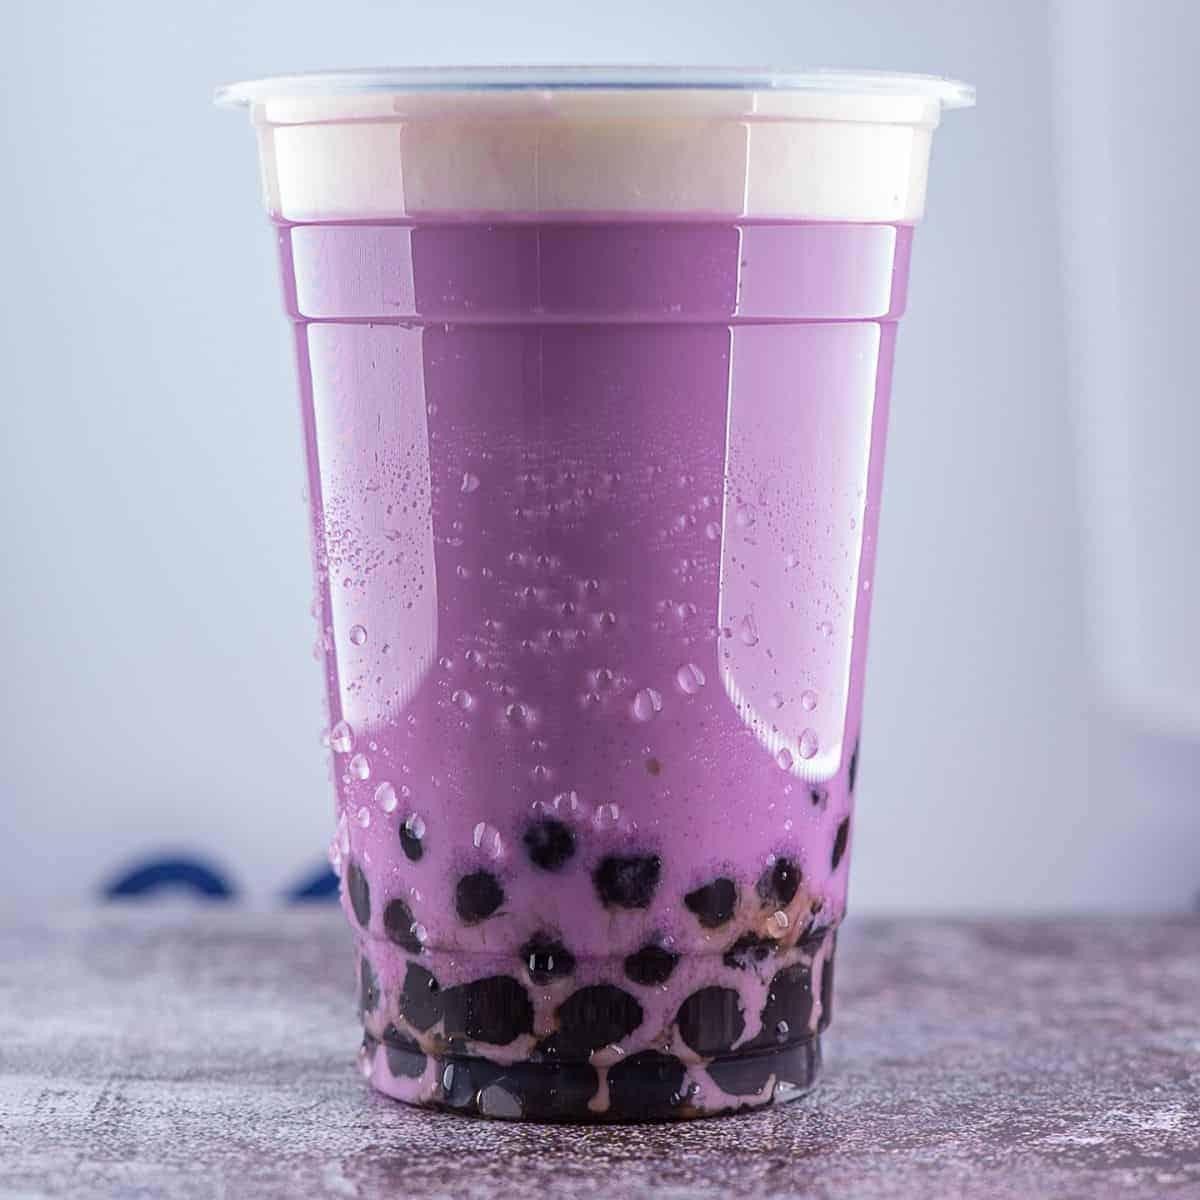 Taro milk tea